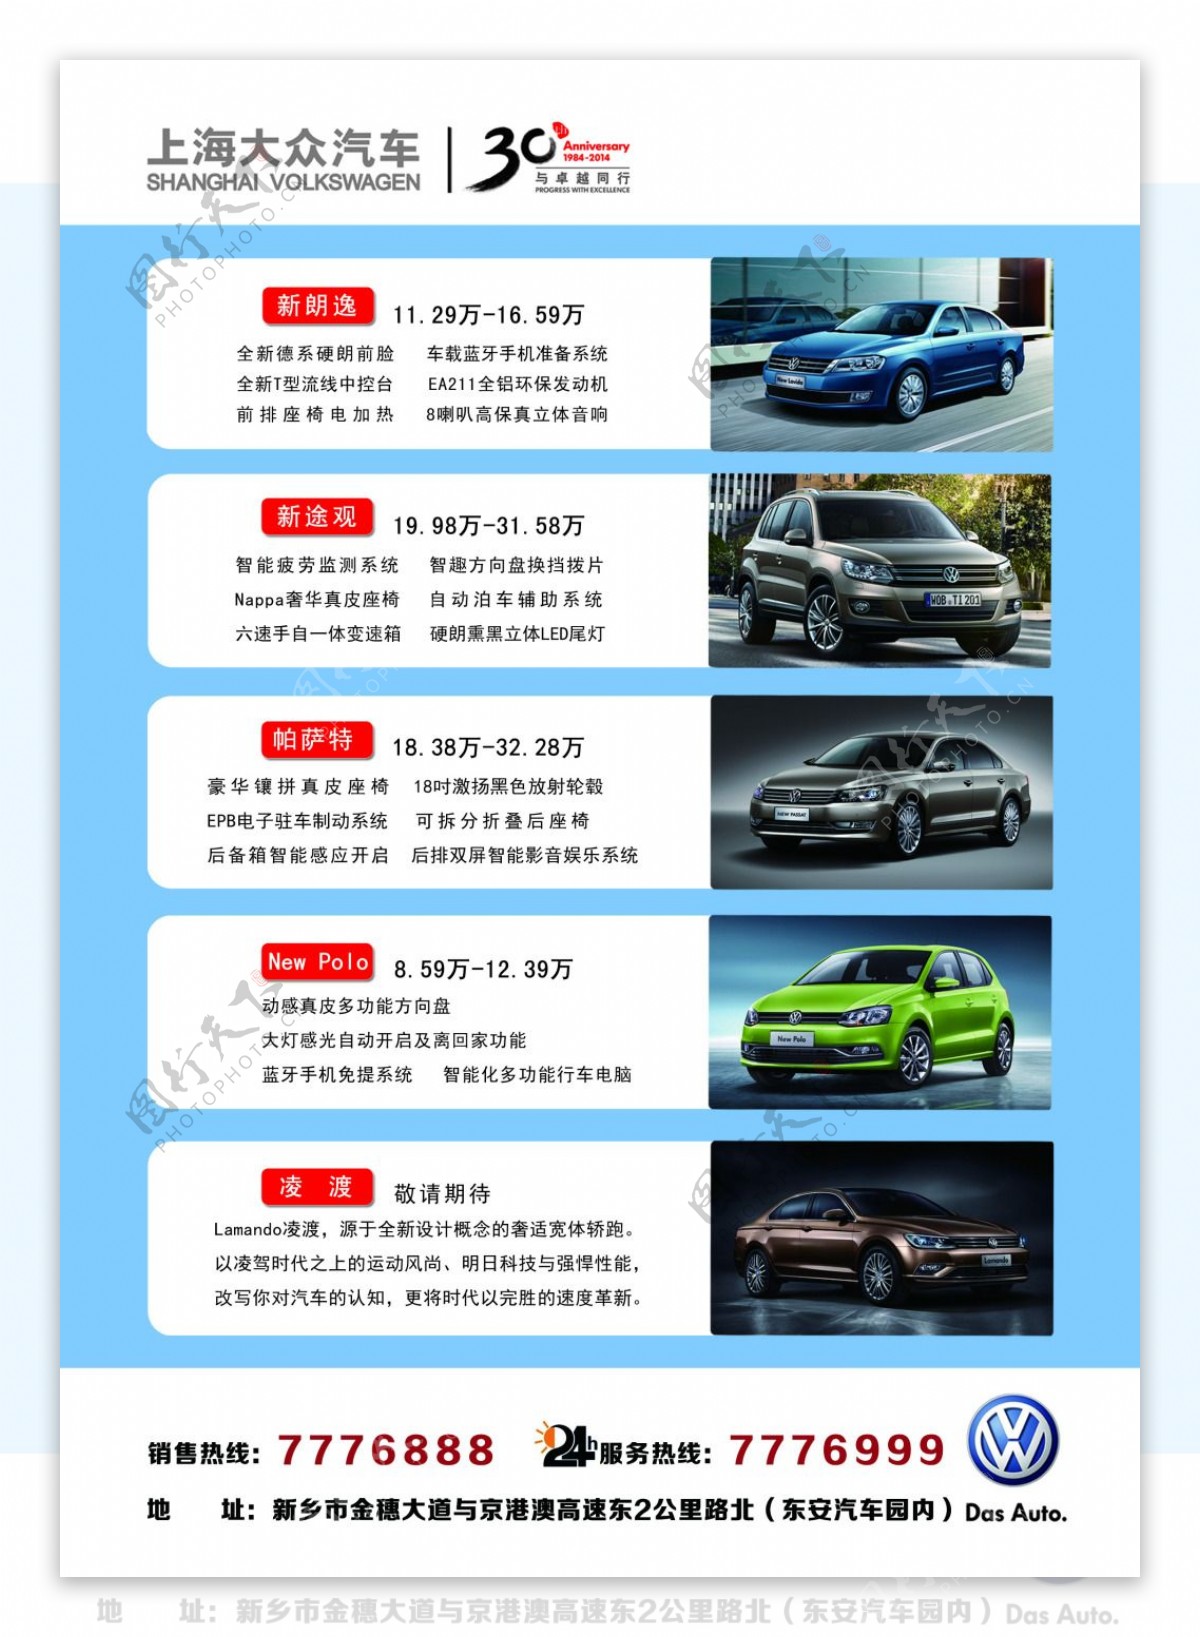 上海大众车型介绍